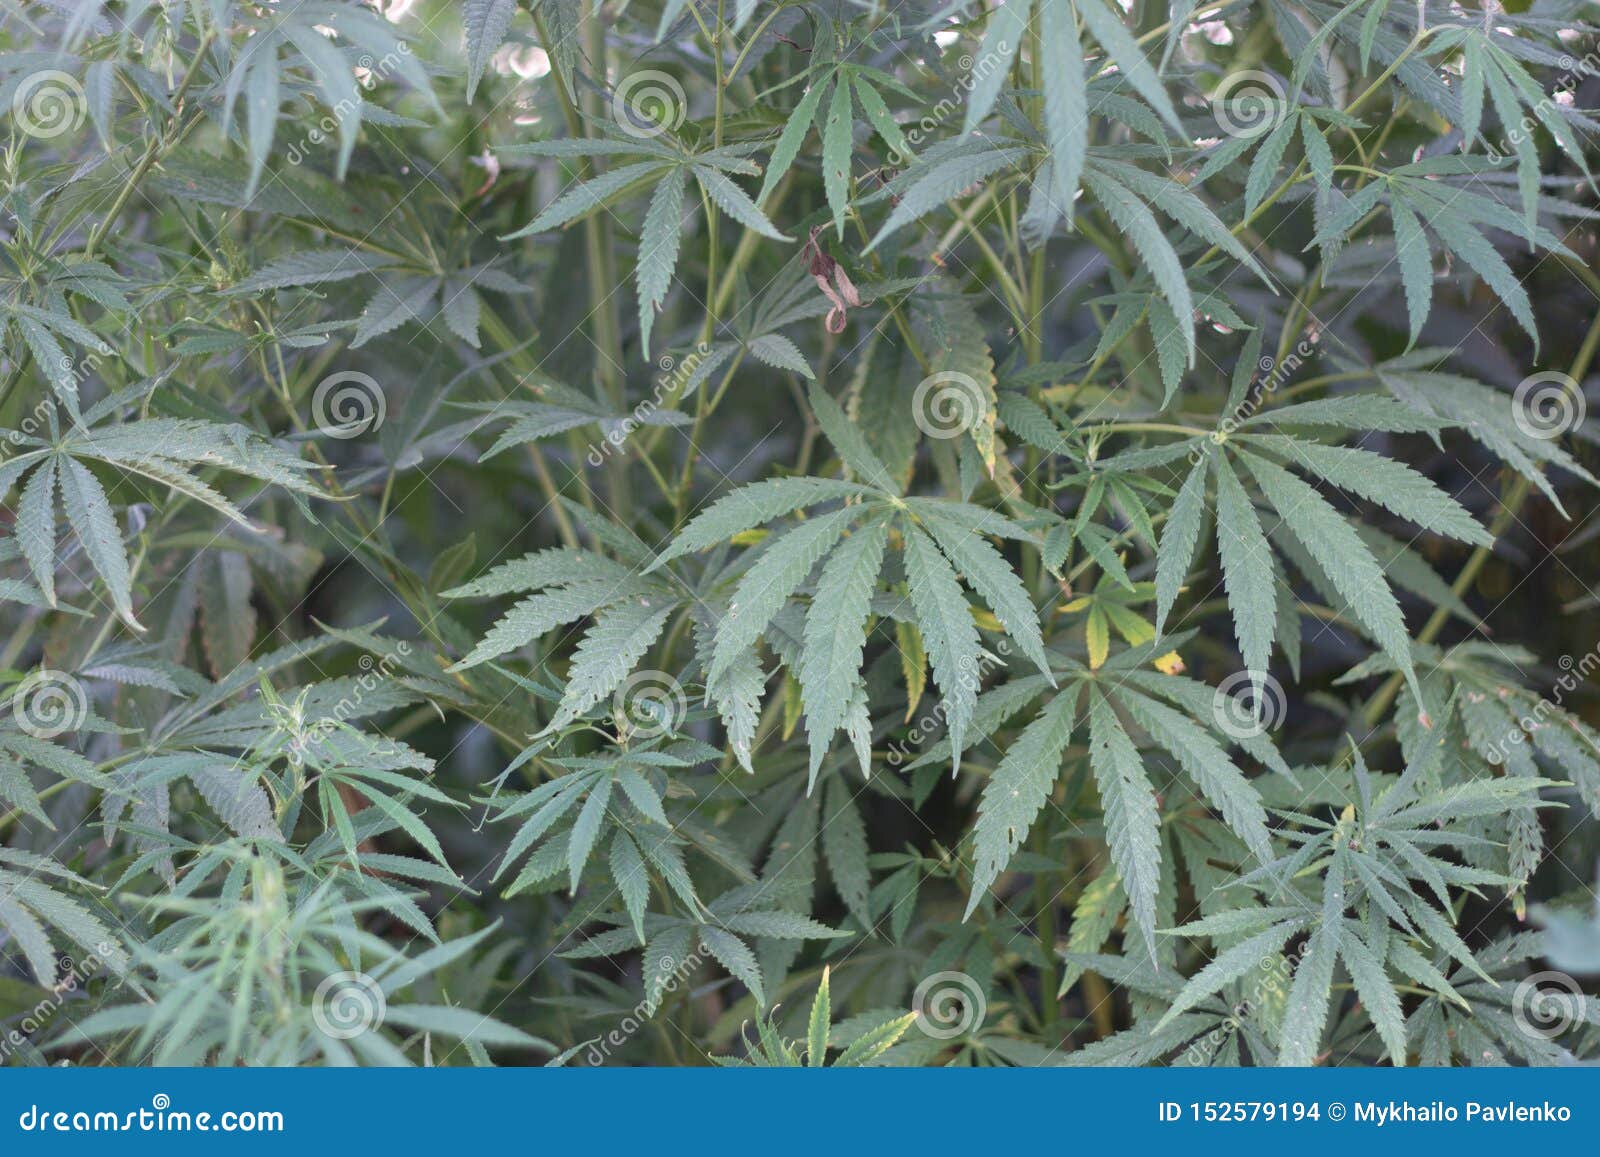 Скачать фото куст марихуаны браузер тор bundle